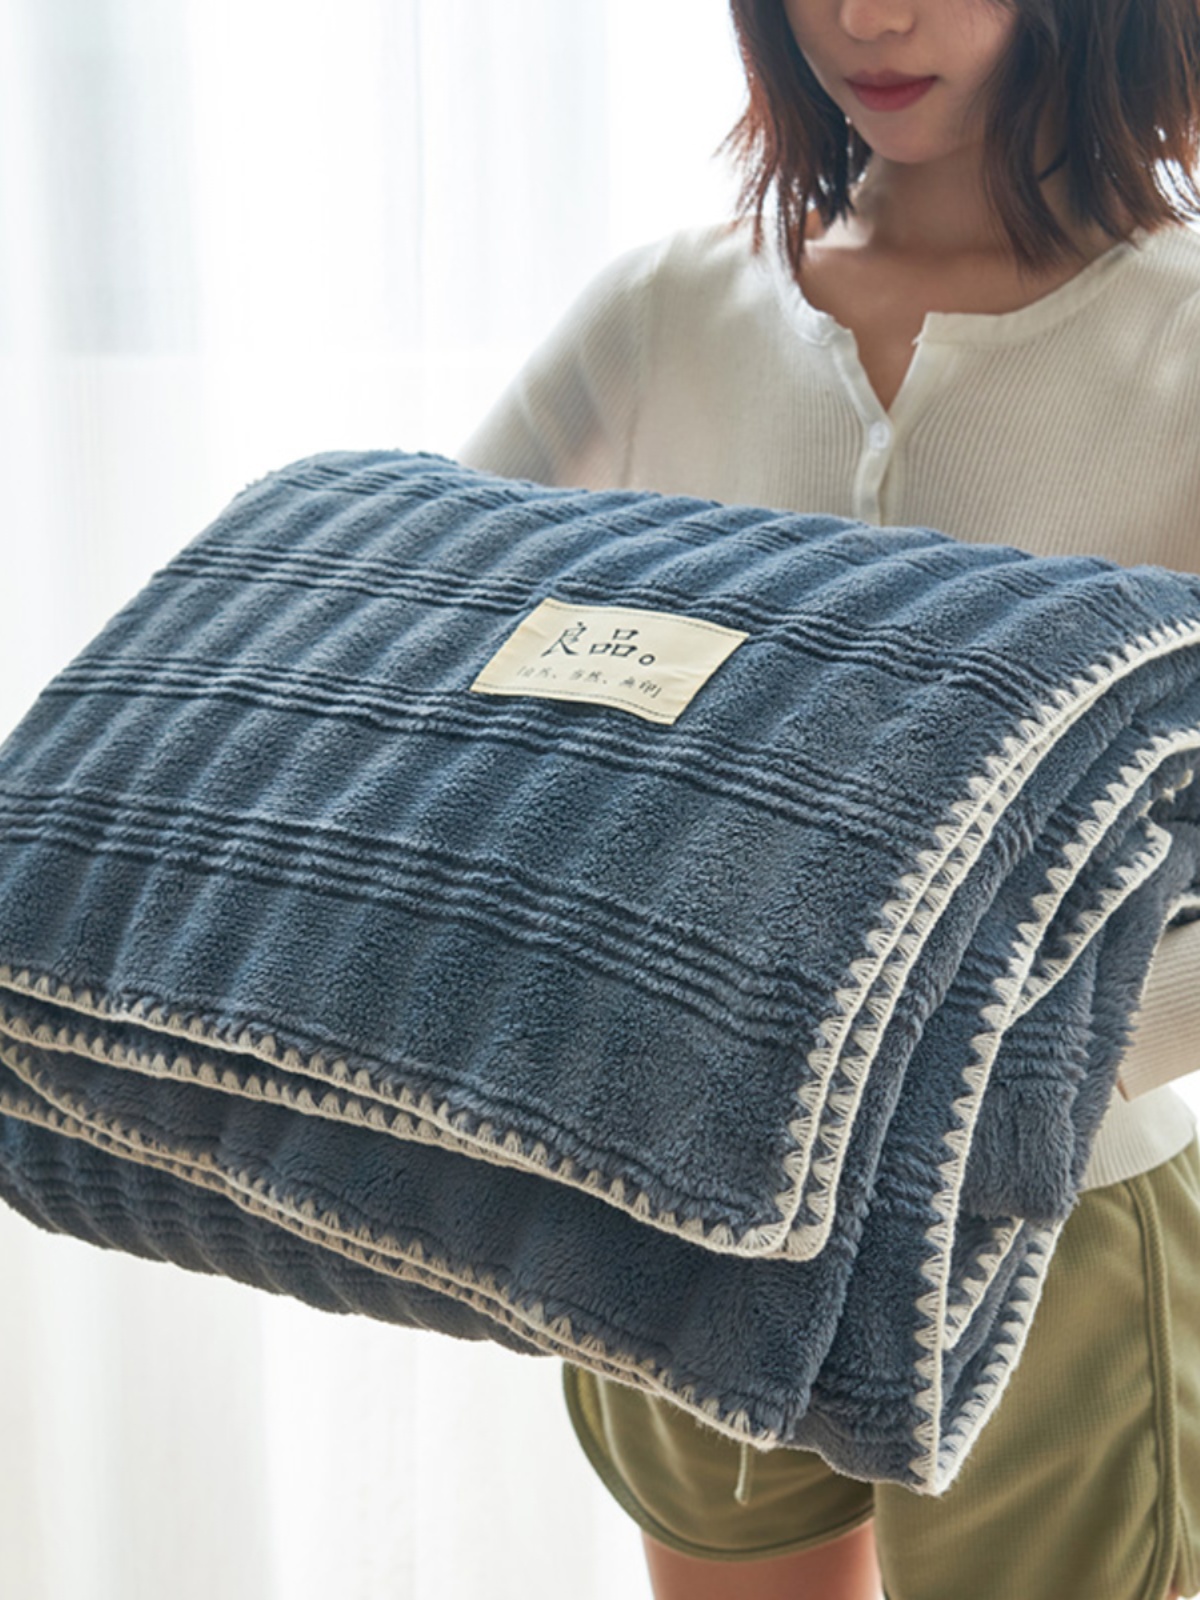 溫暖舒適的布蘭卡兔毛絨毛毯加厚設計適合冬季使用適用於沙發床等多種場合